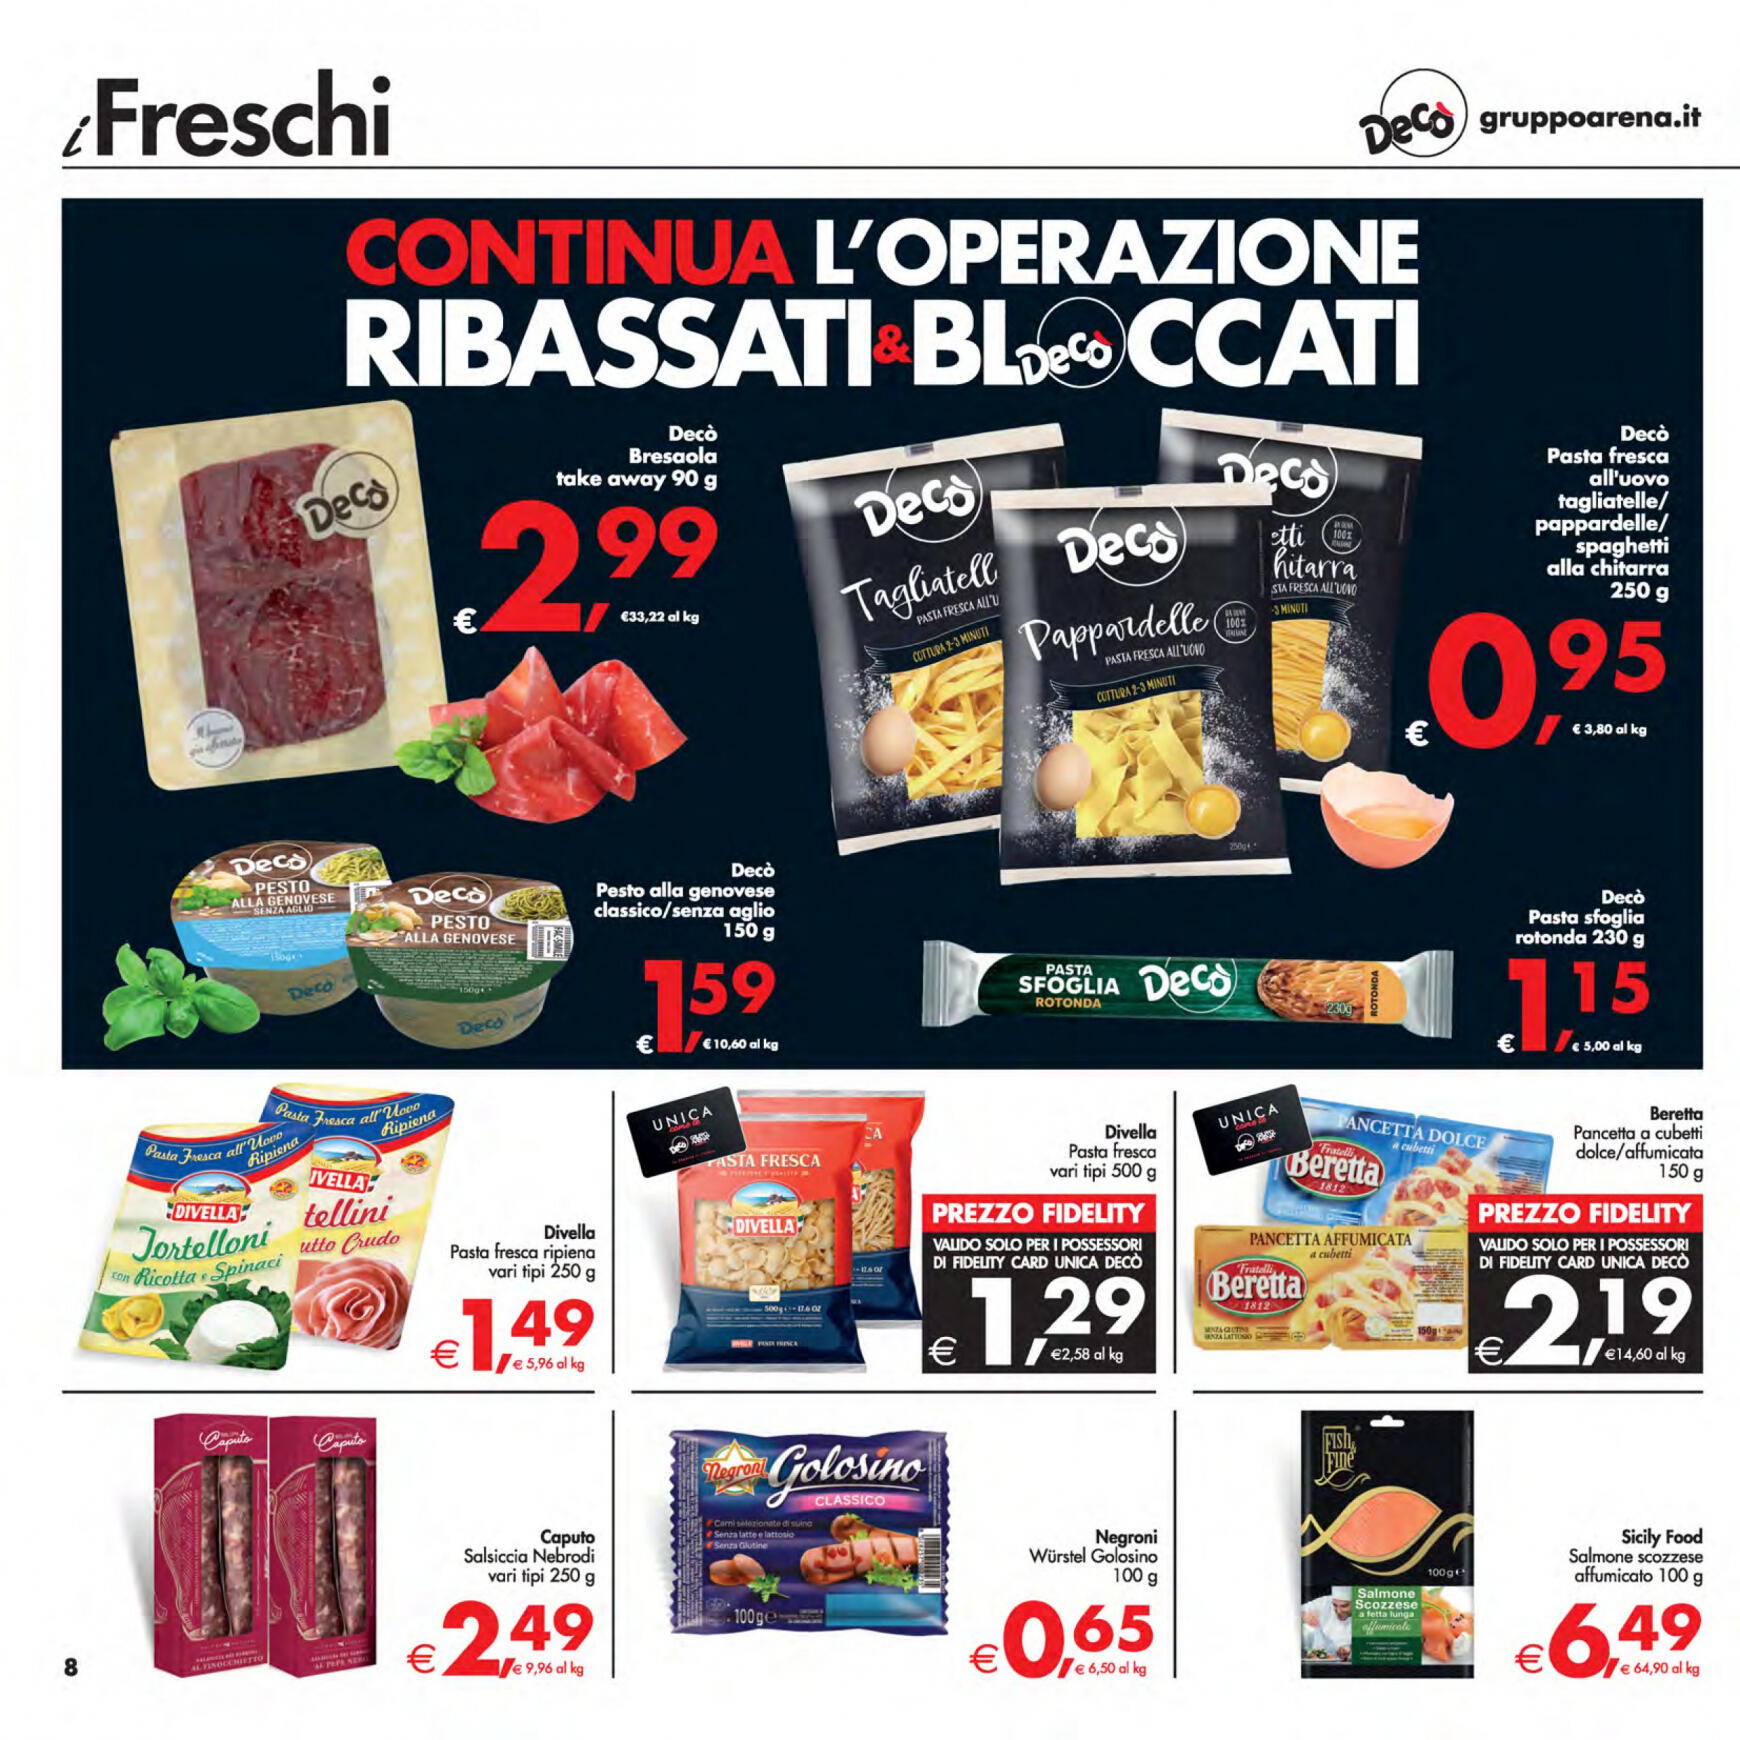 deco - Nuovo volantino Decò - Supermercati/Maxistore/Local 23.04. - 02.05. - page: 8